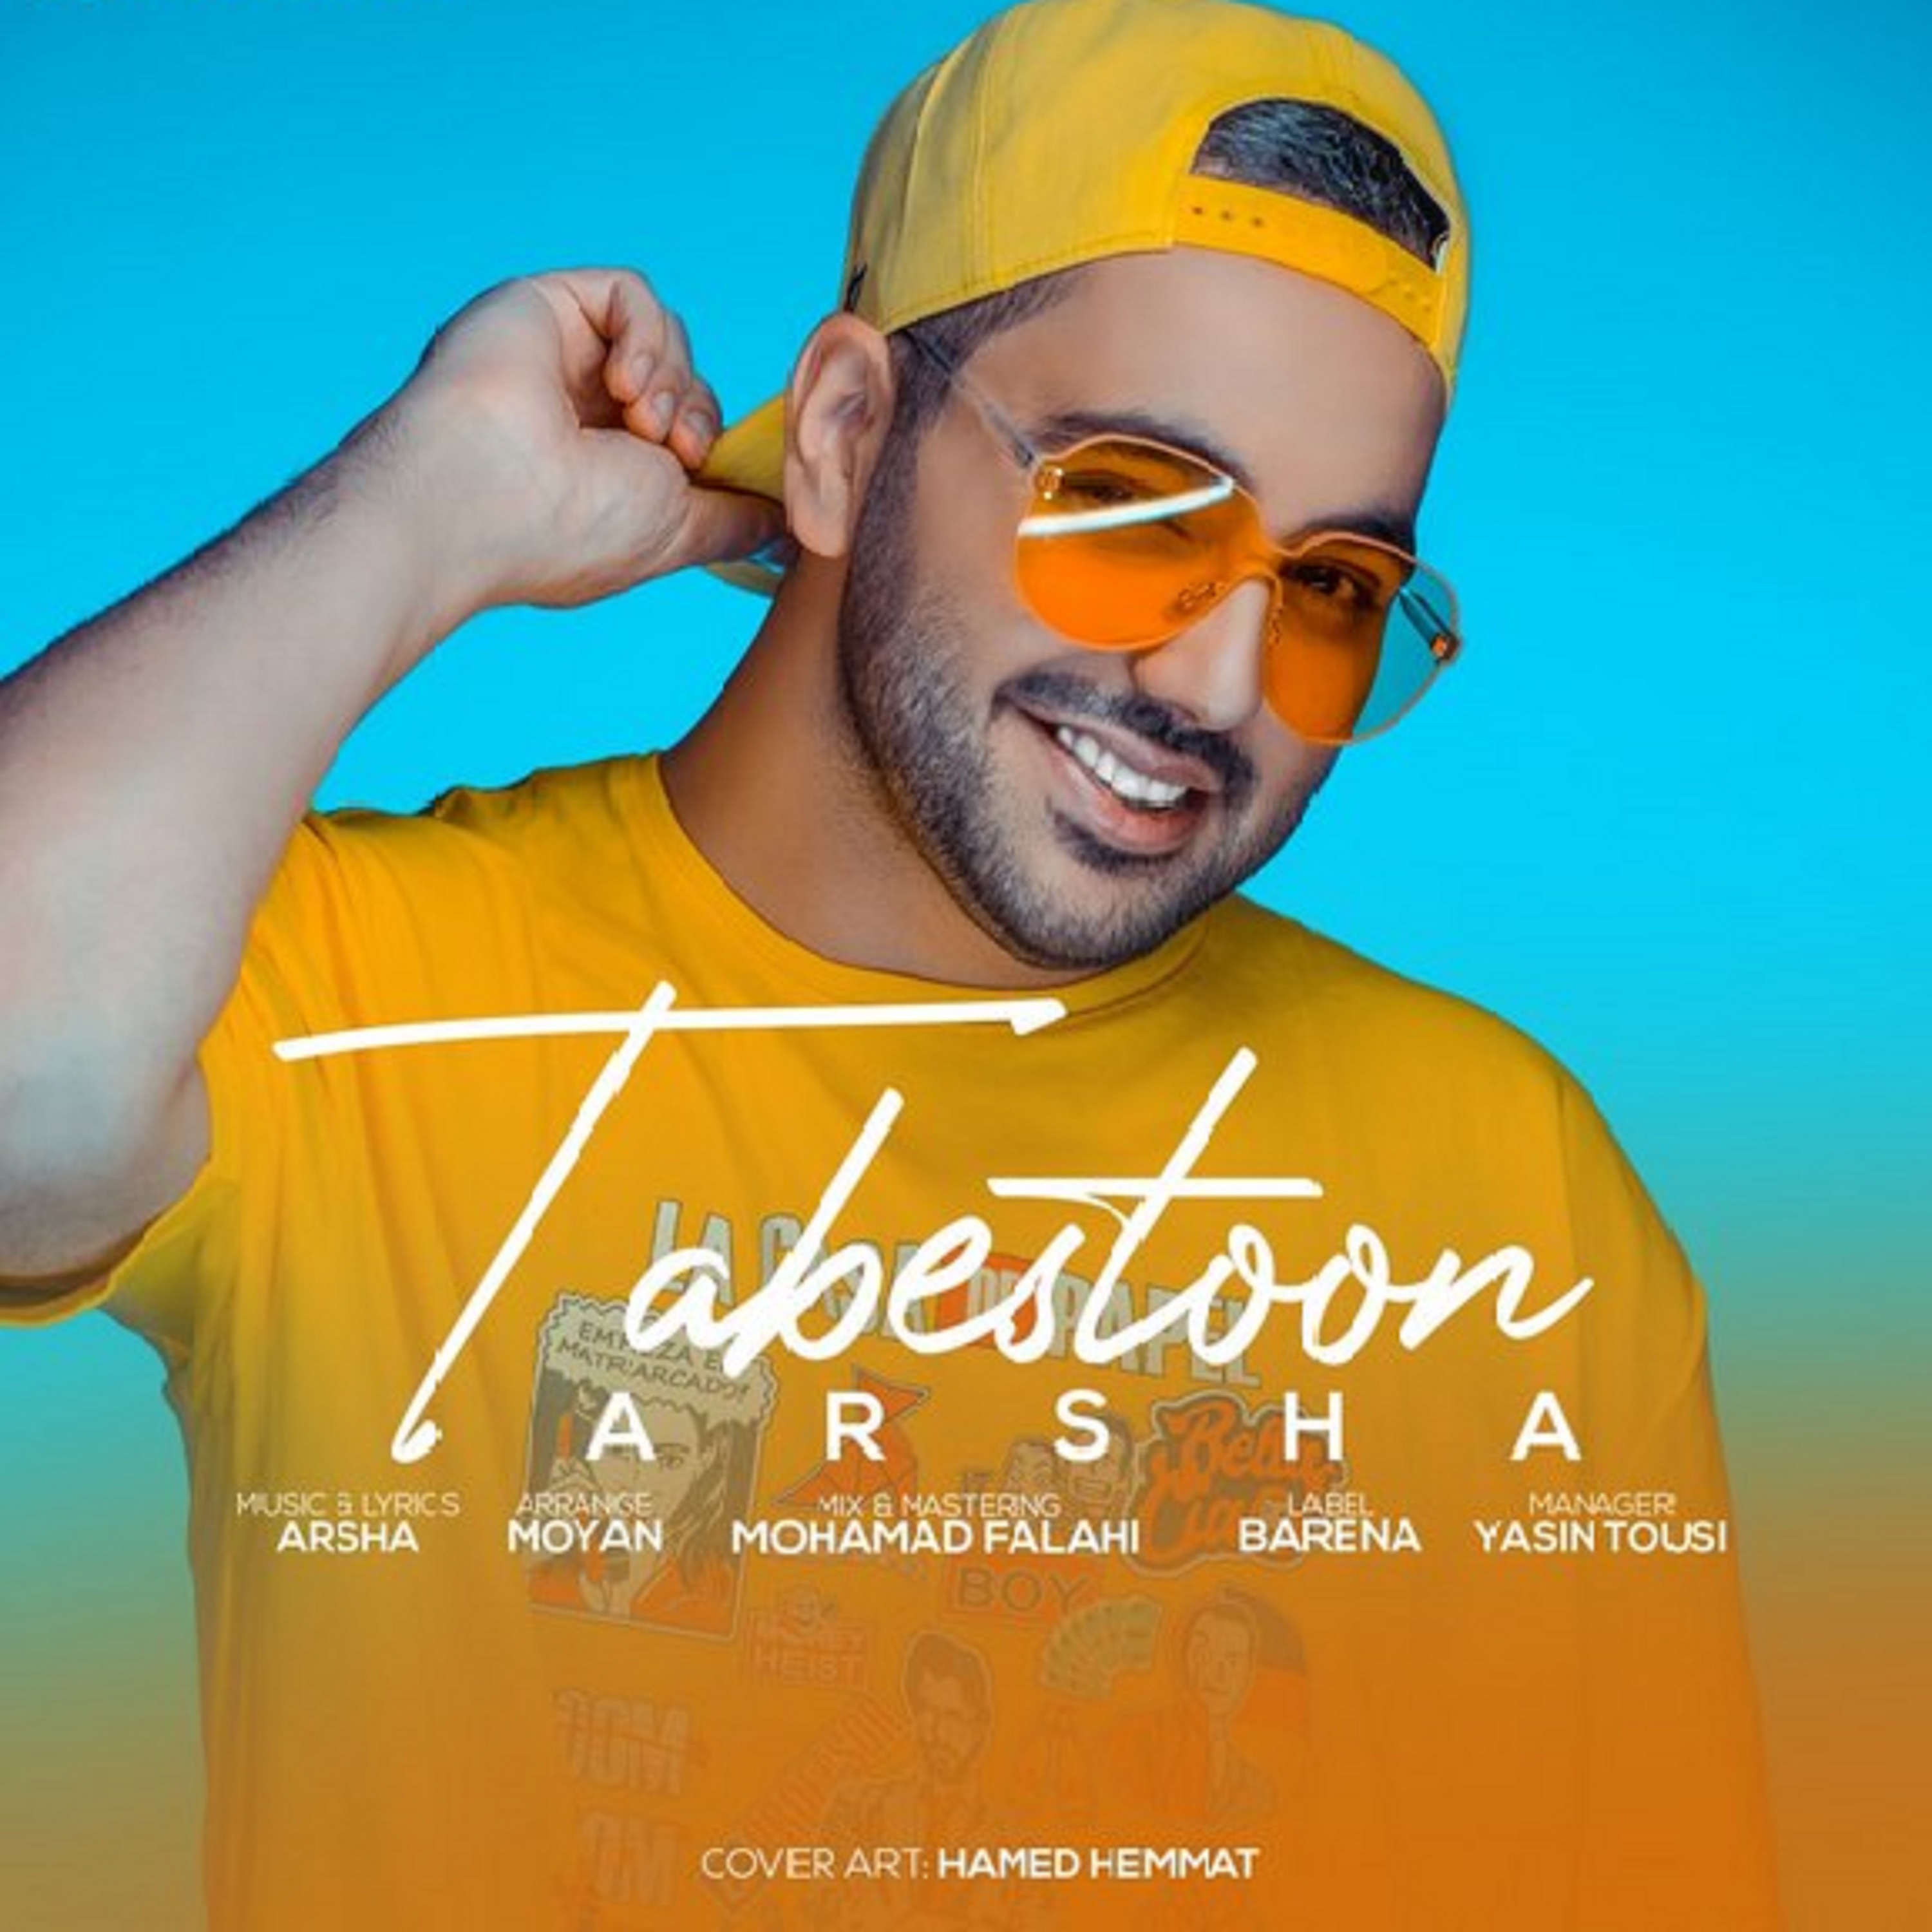  دانلود آهنگ جدید آرشا - تابستون | Download New Music By Arsha - Tabestoon